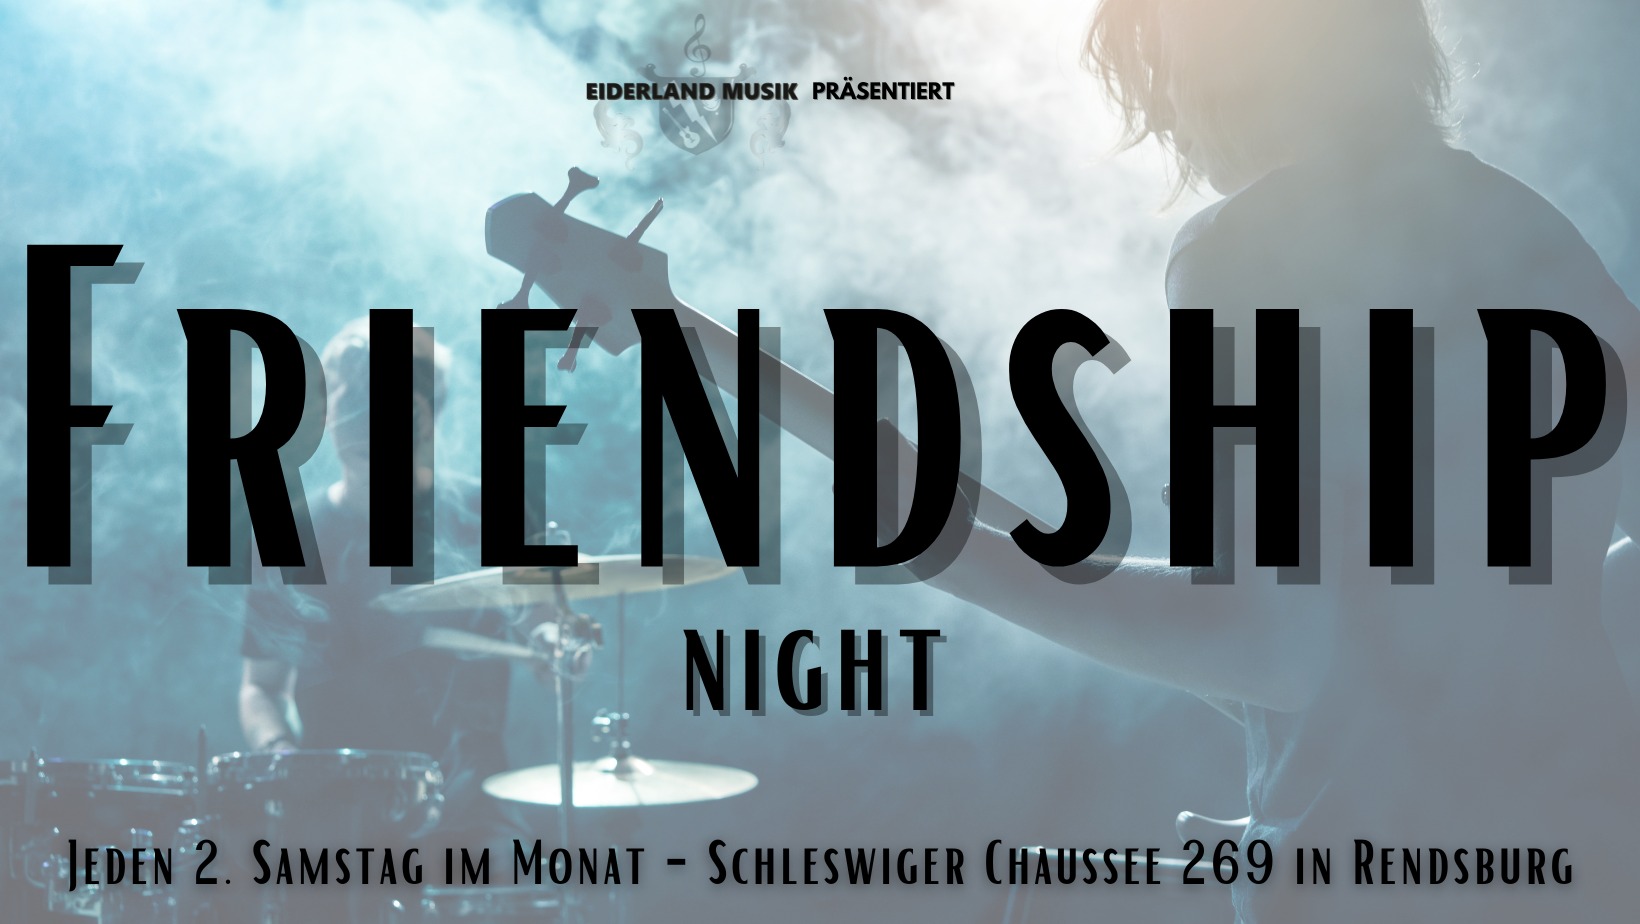 Friendship Night Eiderland-Musik e.V.